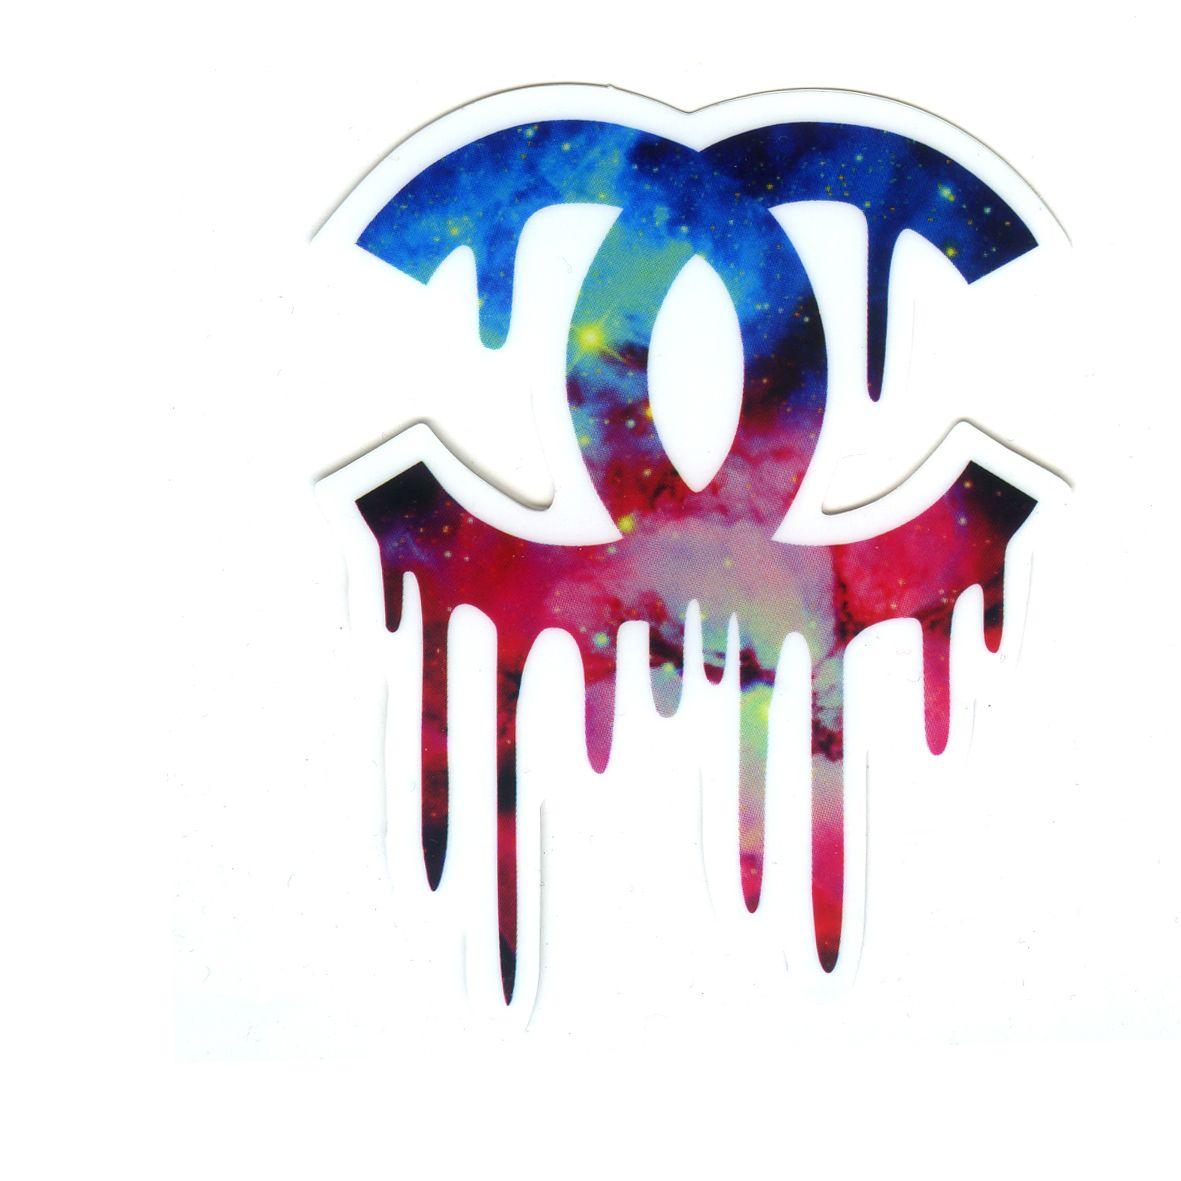 Chanel Galaxy Logo - 1631 Chanel melting galaxy logo , Height 8 cm decal sticker ...